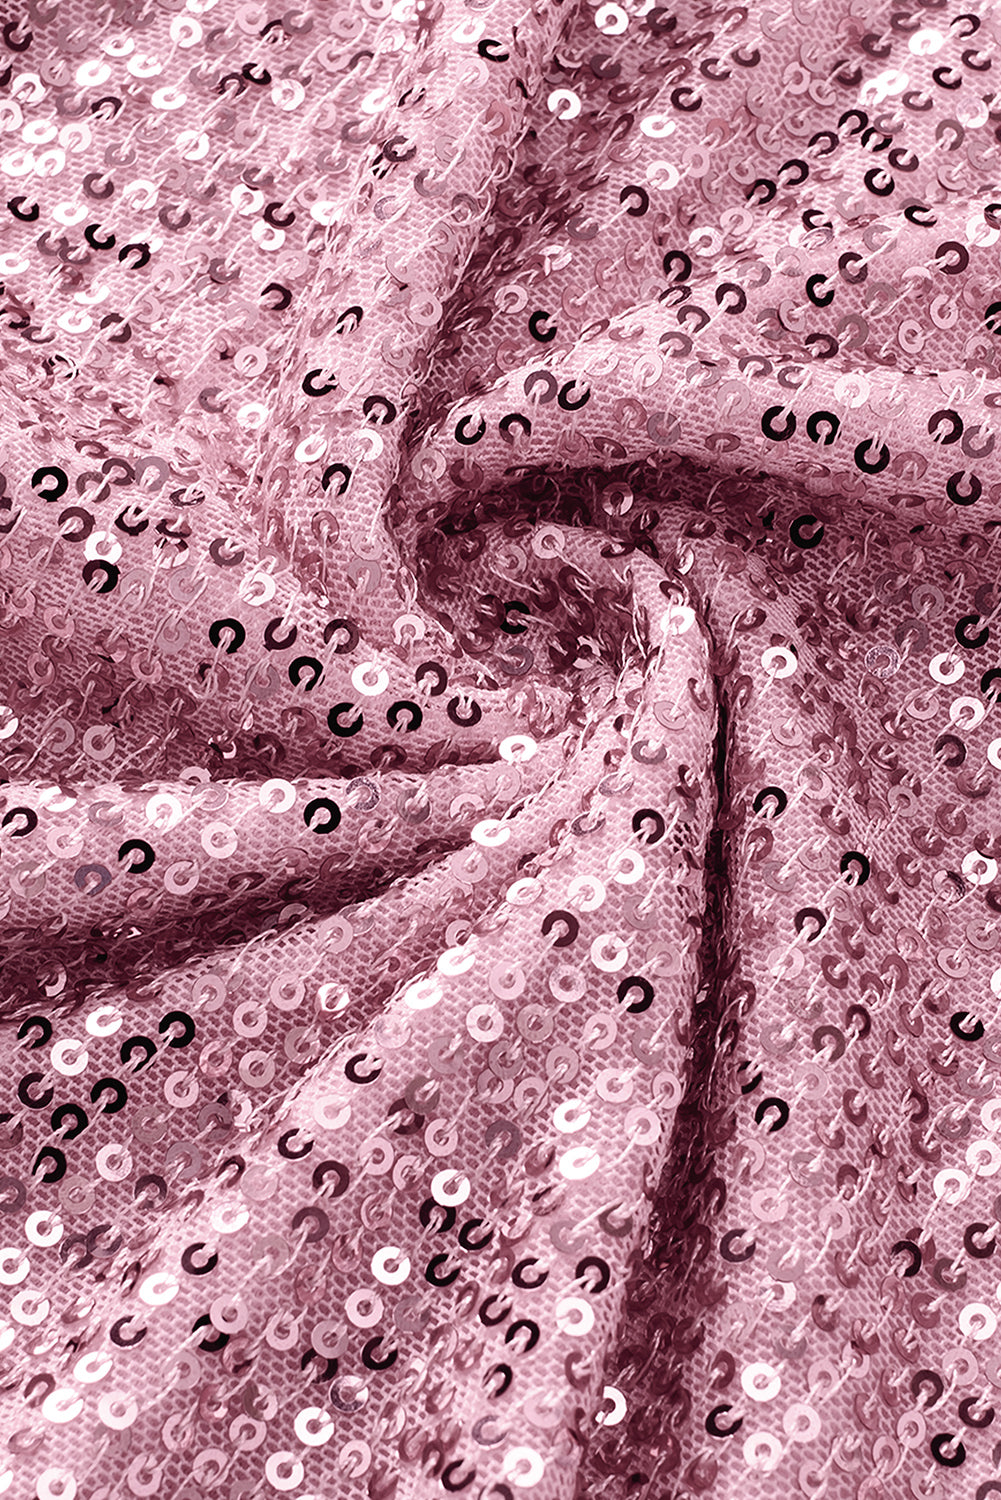 Rosafarbene, fließende Schlaghose mit glänzenden Pailletten in Übergröße